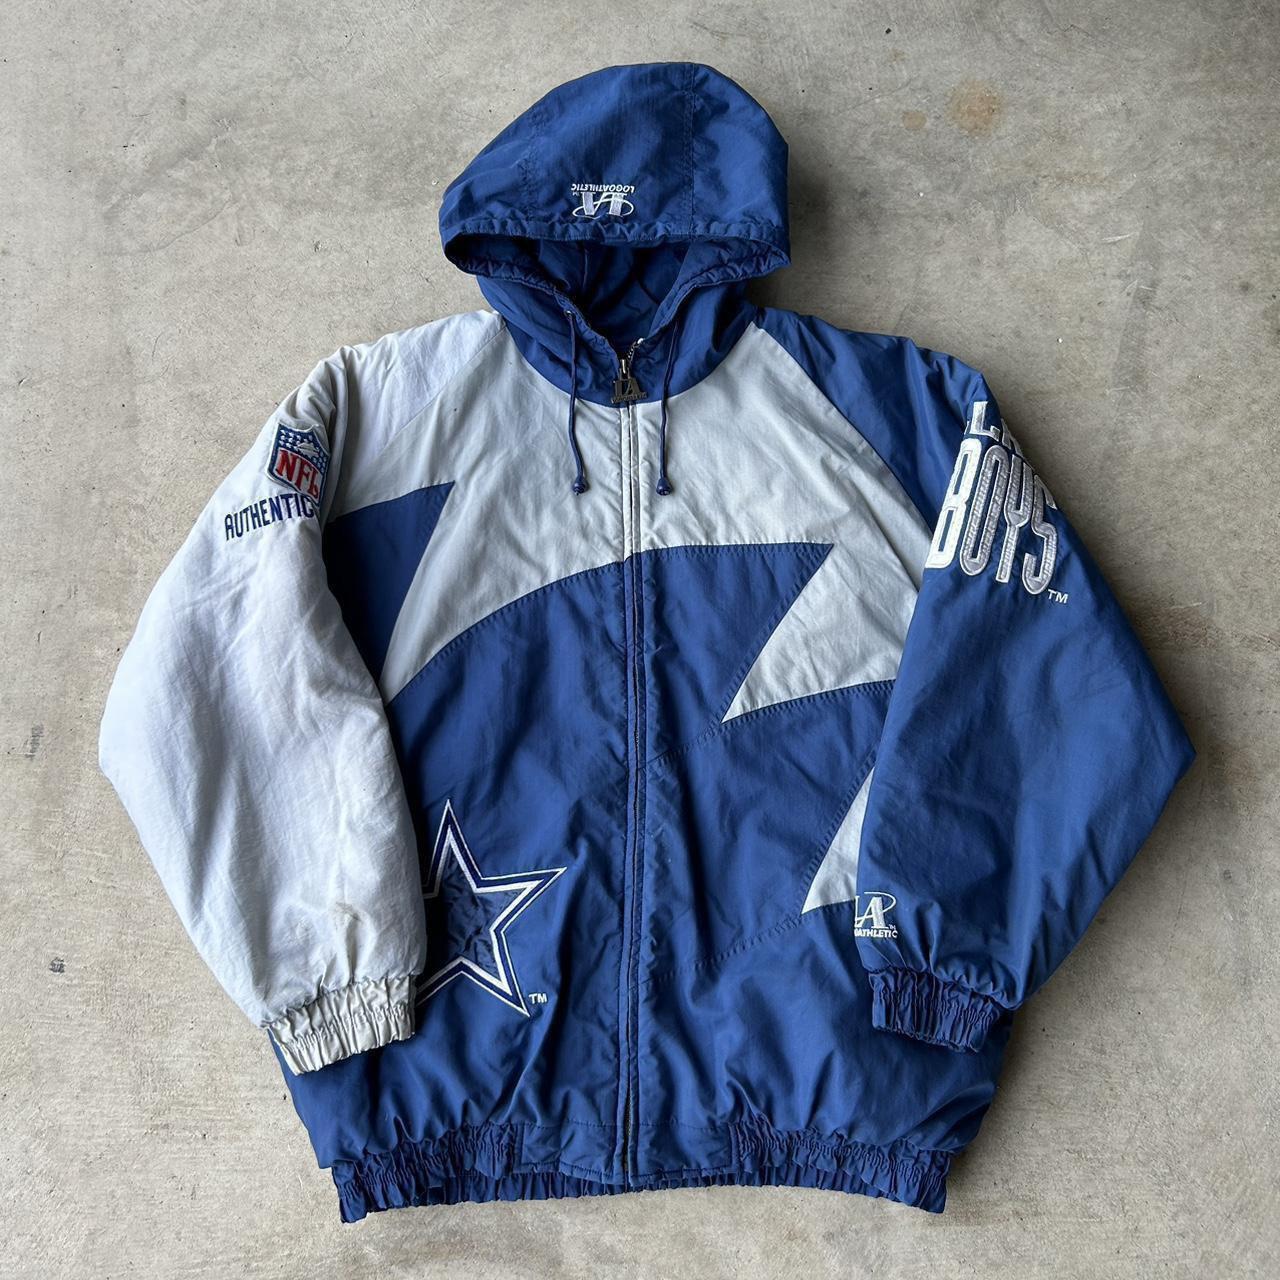 Vintage 90s Dallas Cowboys logo athletic jacket.... - Depop